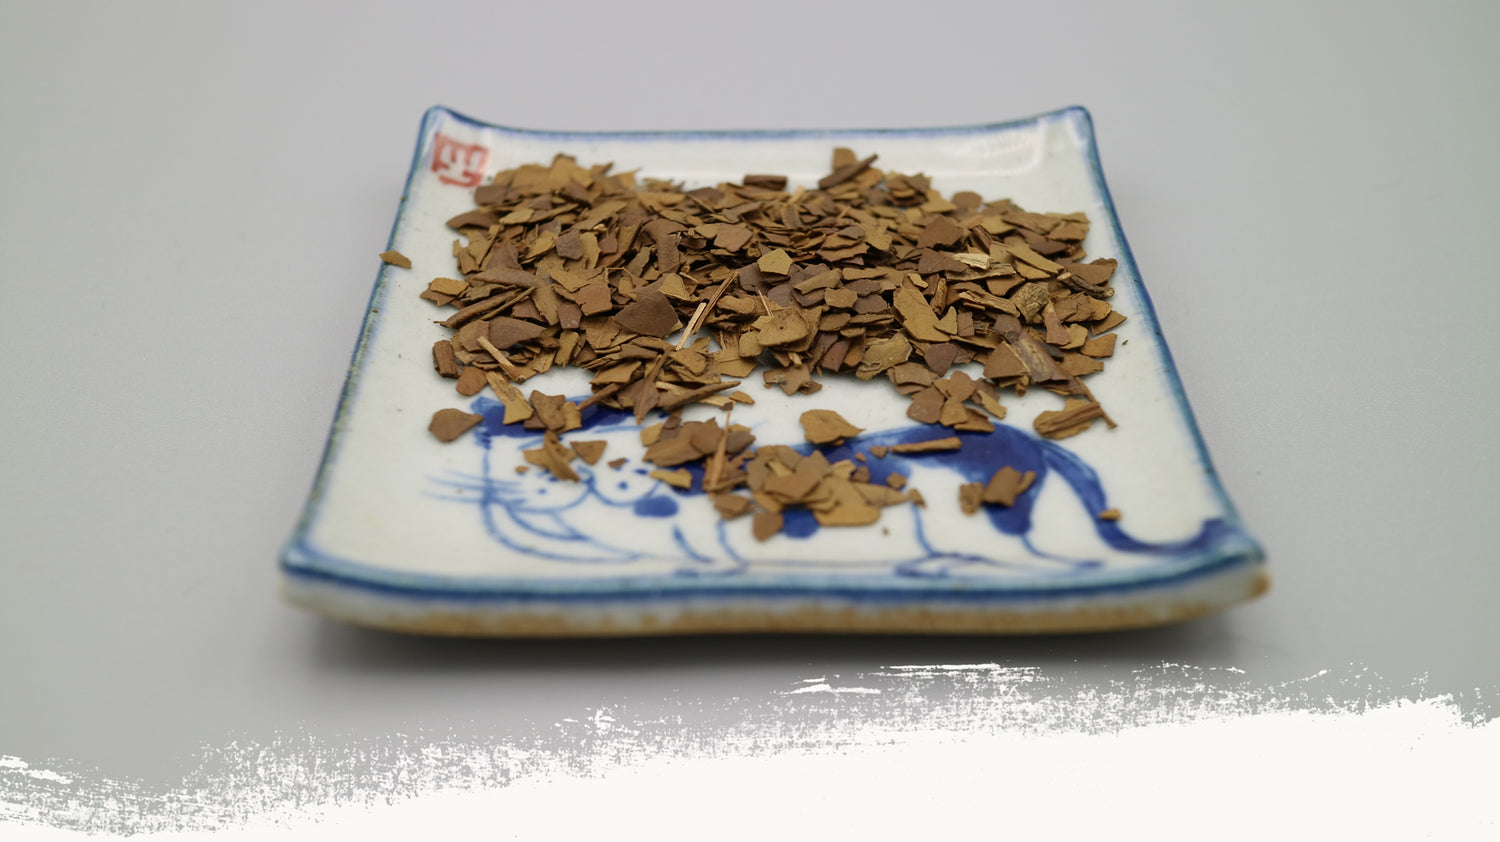 Loose Leaf Herbal Tea "Roasted Yerba Mate - Ilex Paraguariensis”